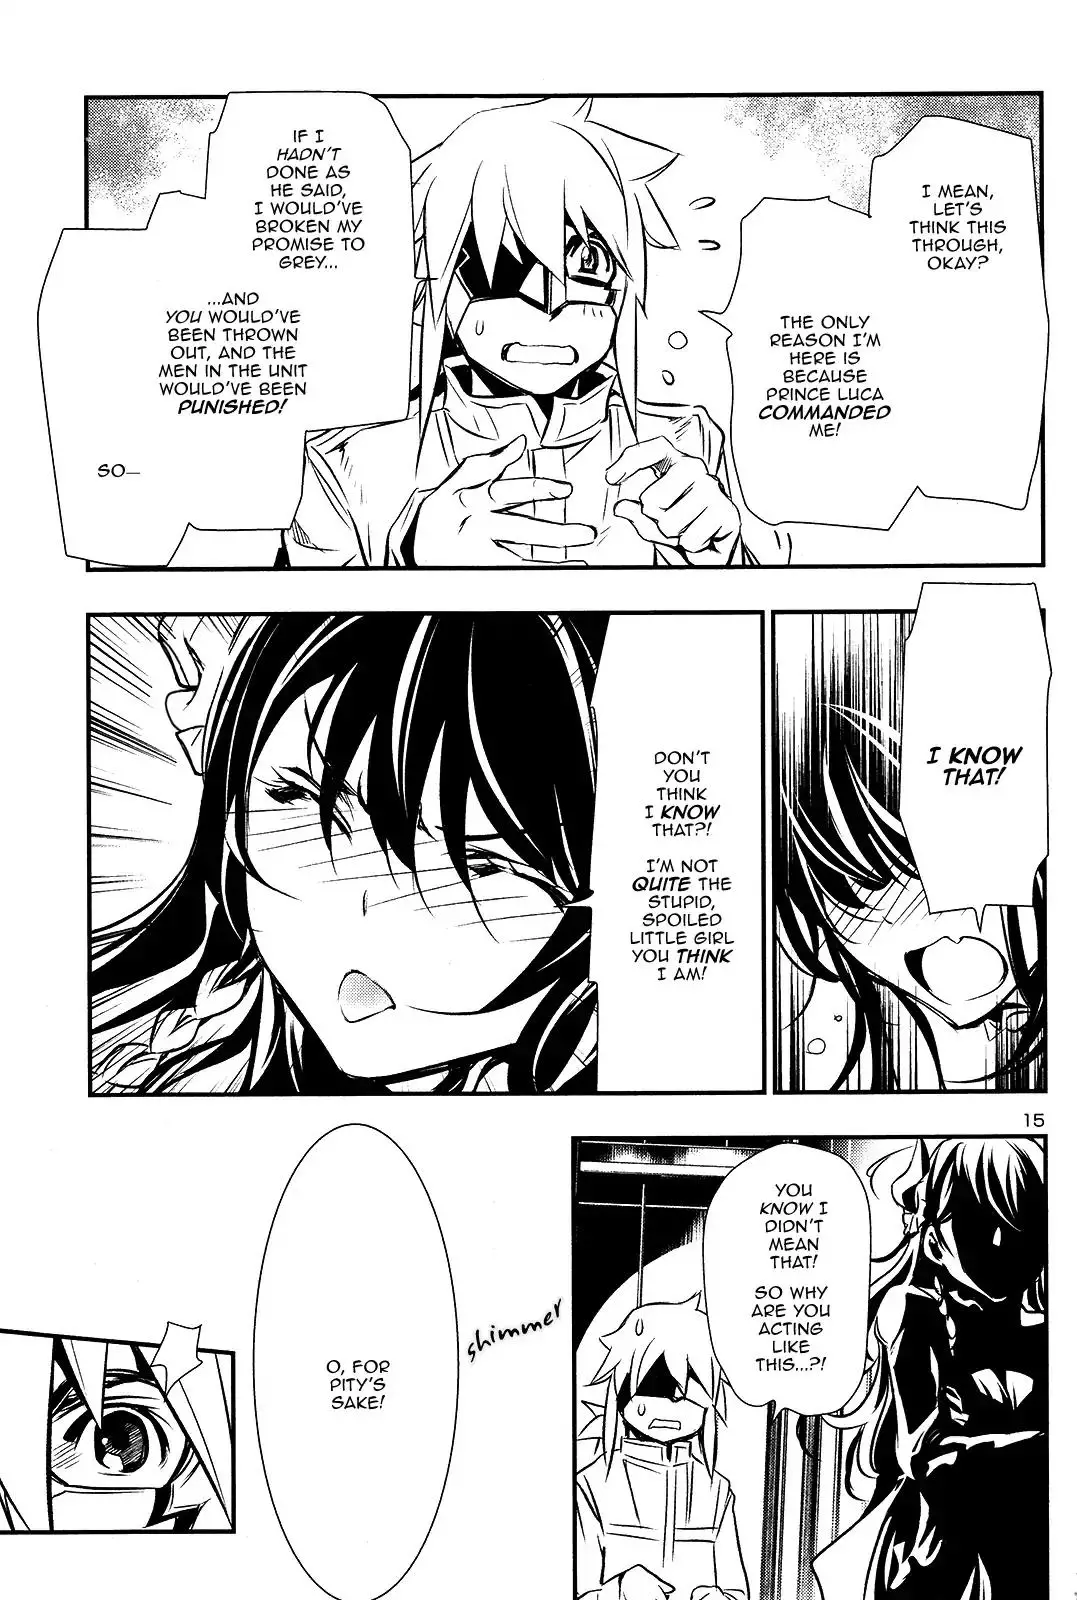 Shinju no Nectar - 11 page 13